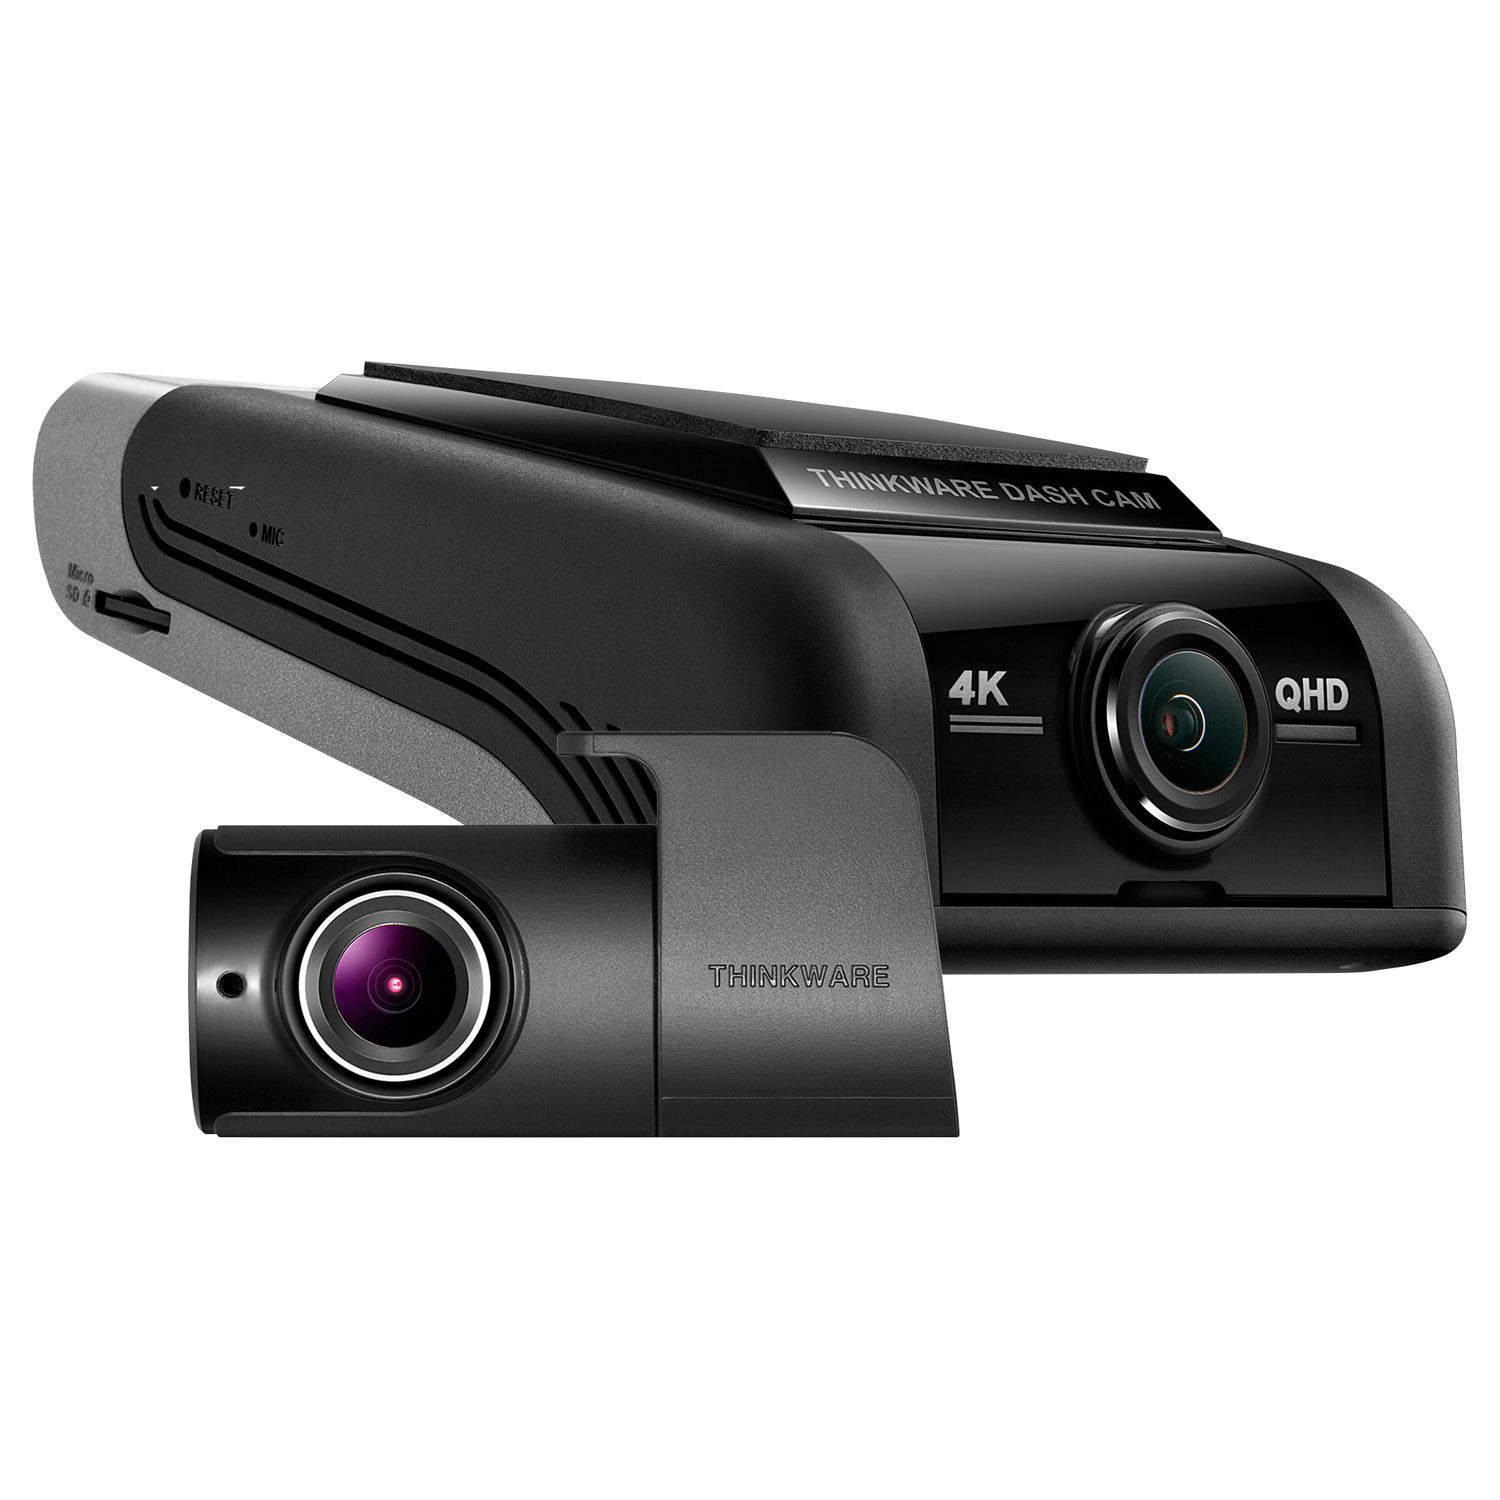 Thinkware U1000 4K UHD Dash Cam with Rear Camera & Wi-Fi